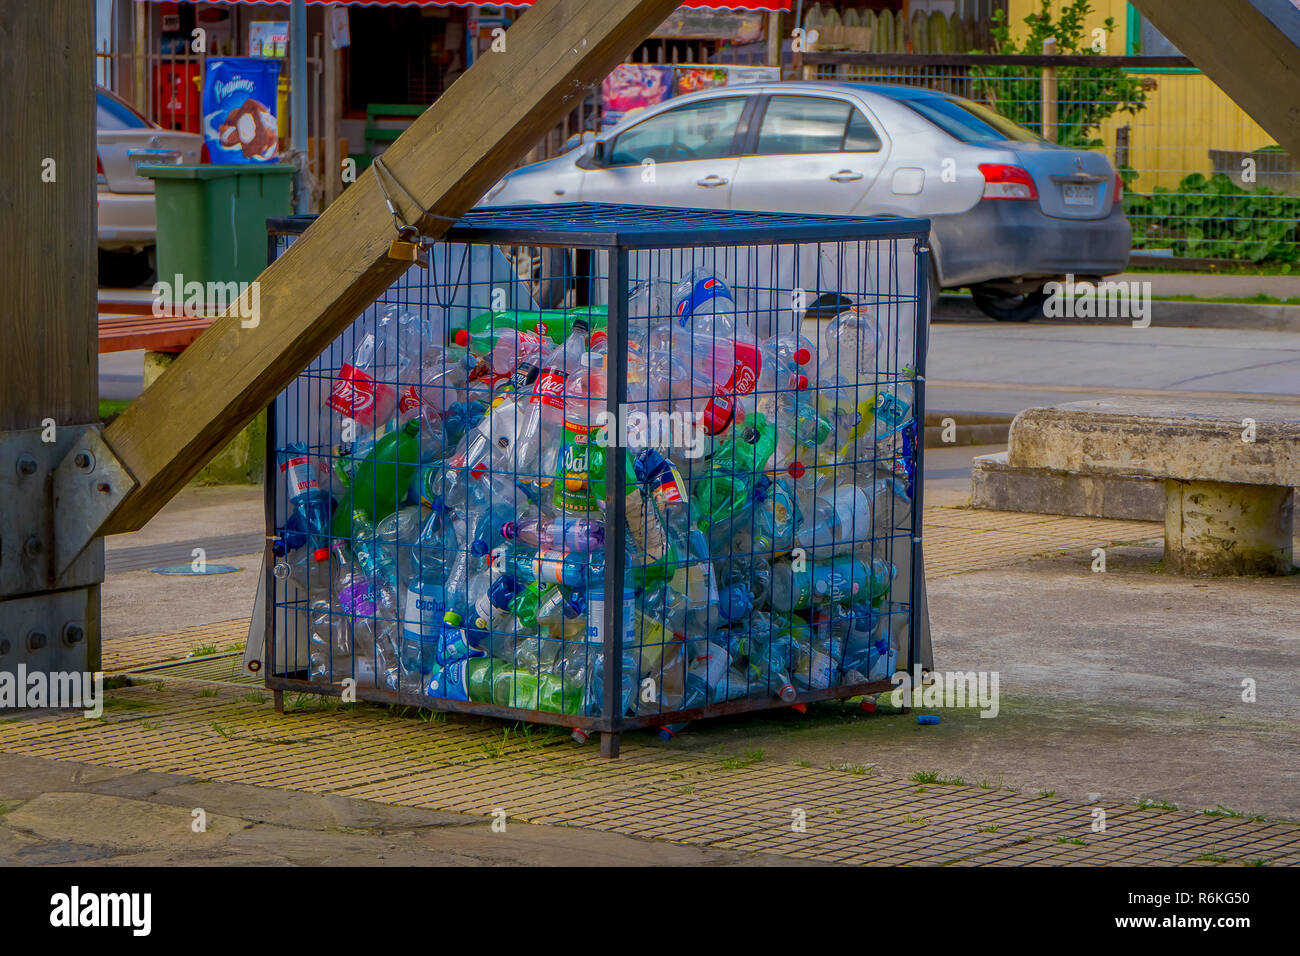 Chiloé, Chili - 27 septembre, 2018 : vue extérieure du boîtier métallique avec quelques botlles en plastique à l'intérieur, de concept de recyclage écologique, friendly city localiser Banque D'Images